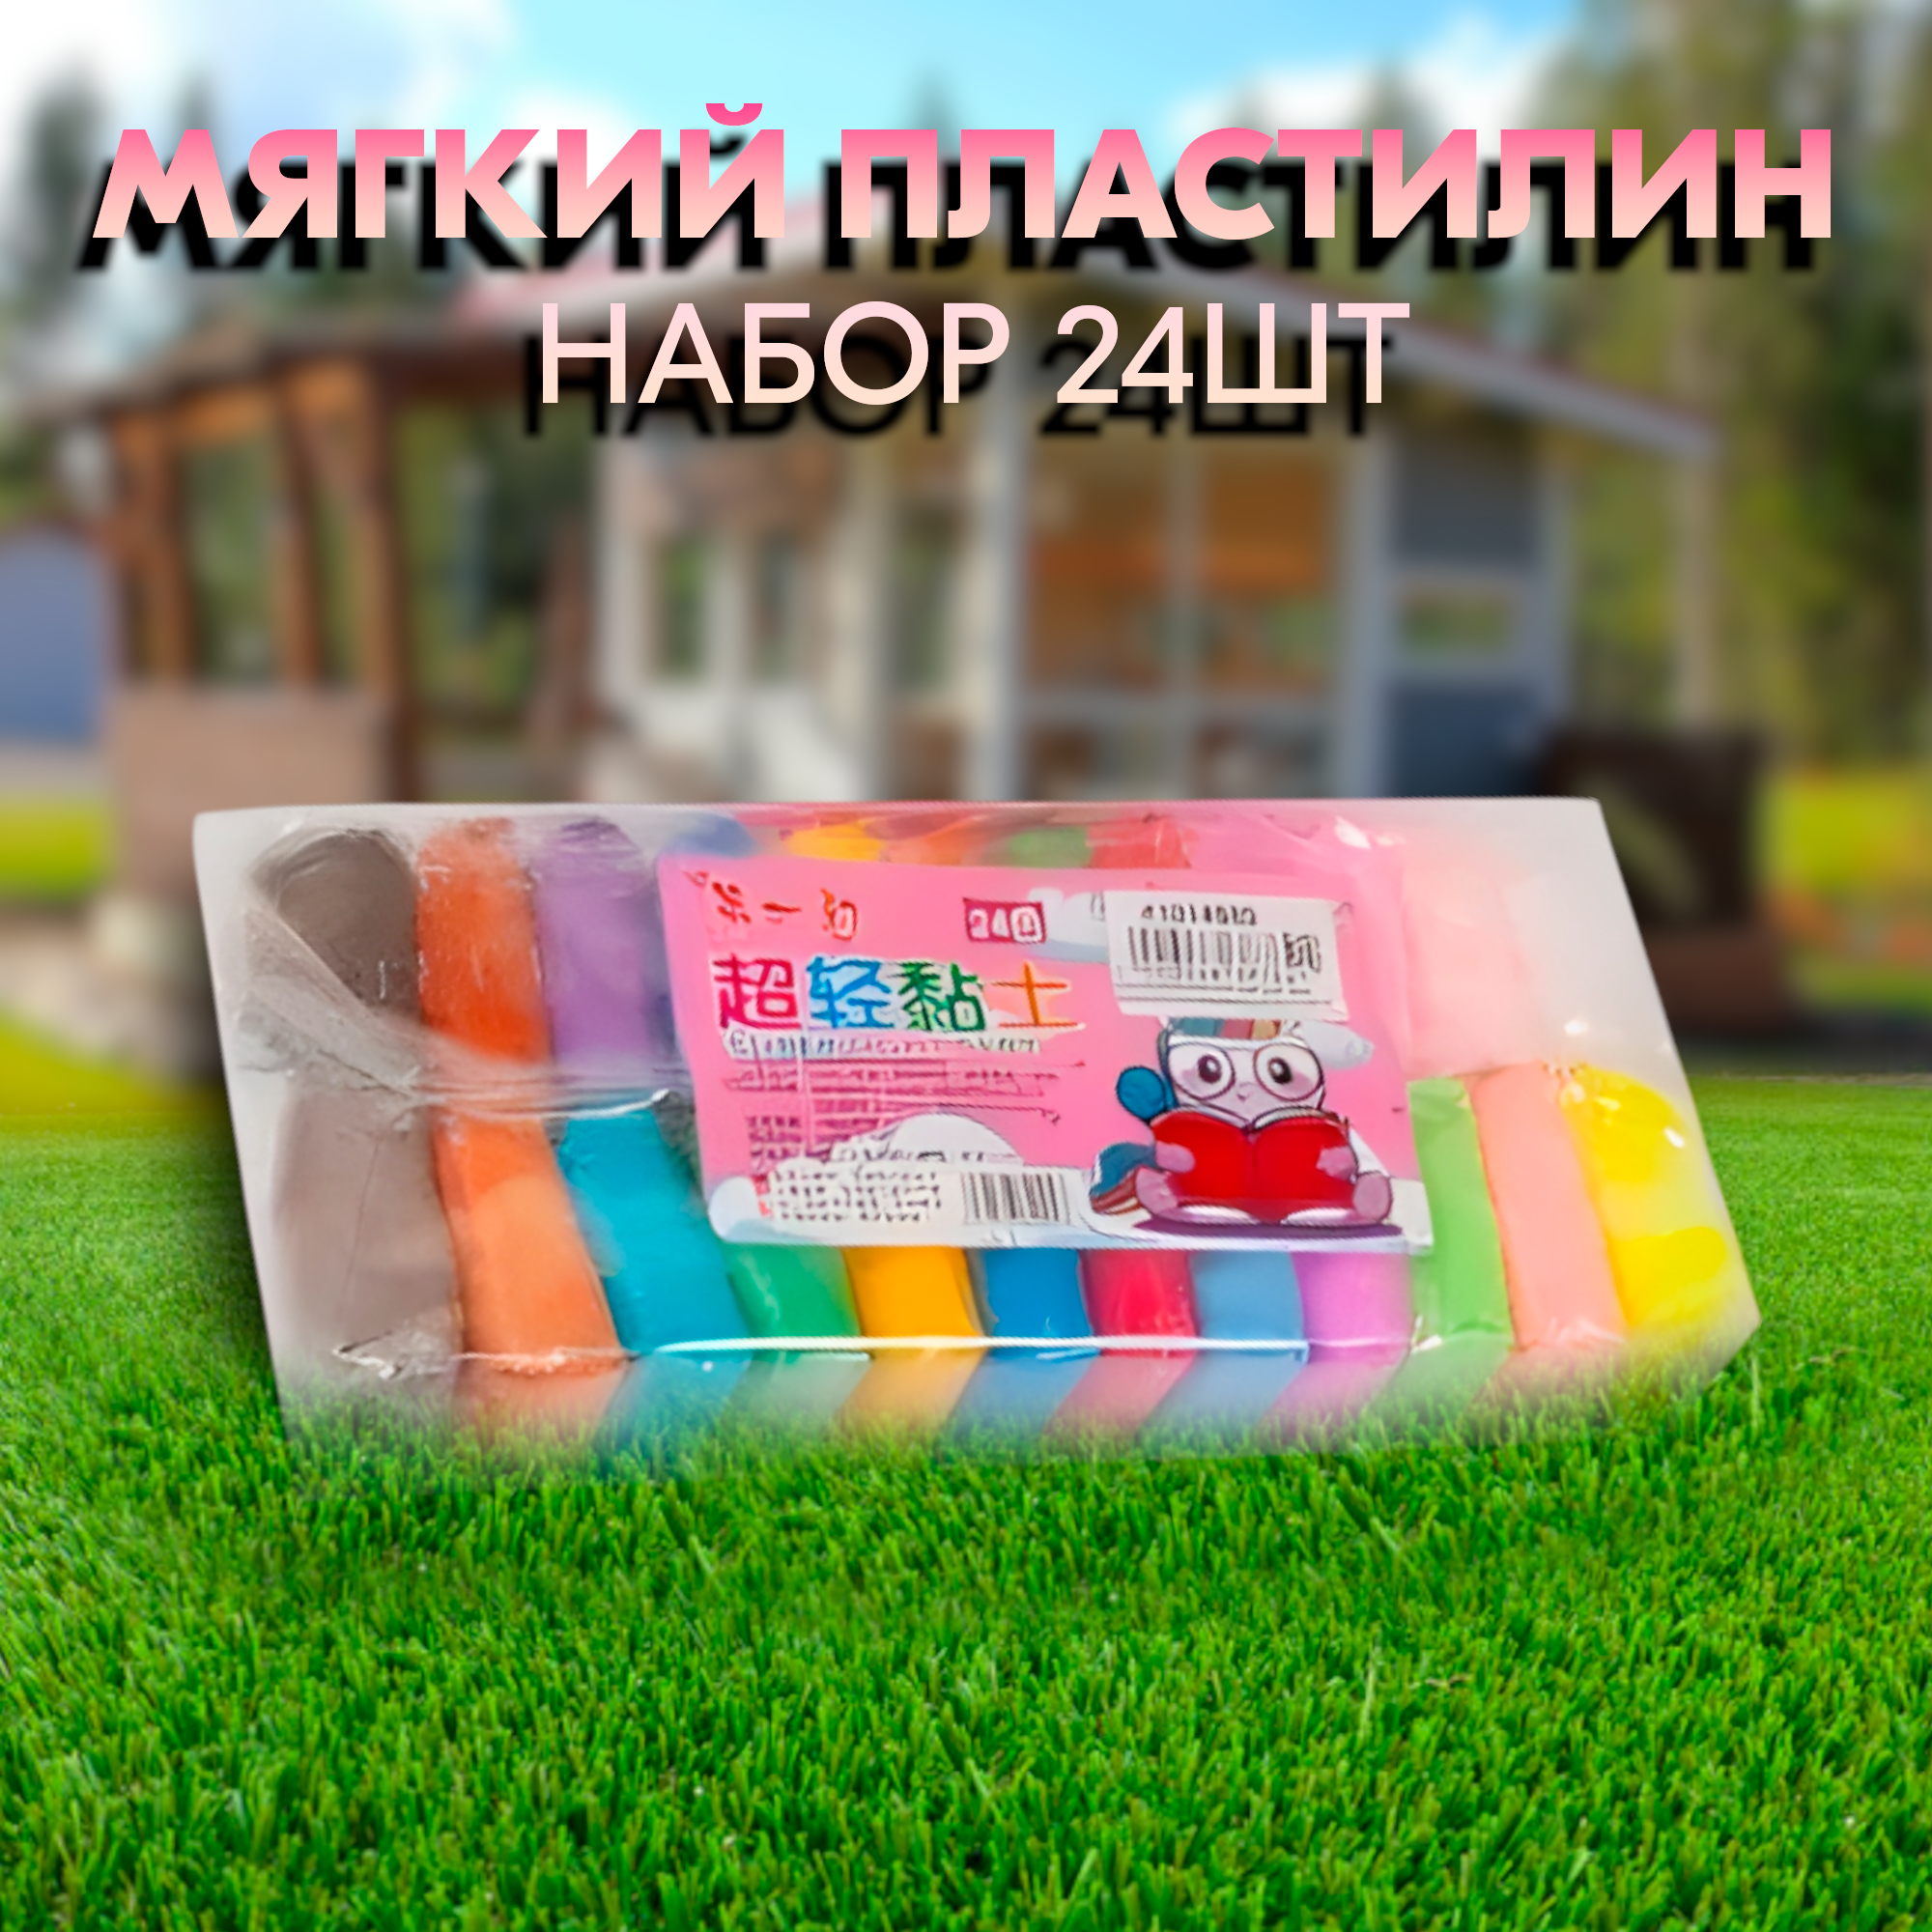 Пластилин легкий мягкий воздушный застывающий для детей, 24 цвета